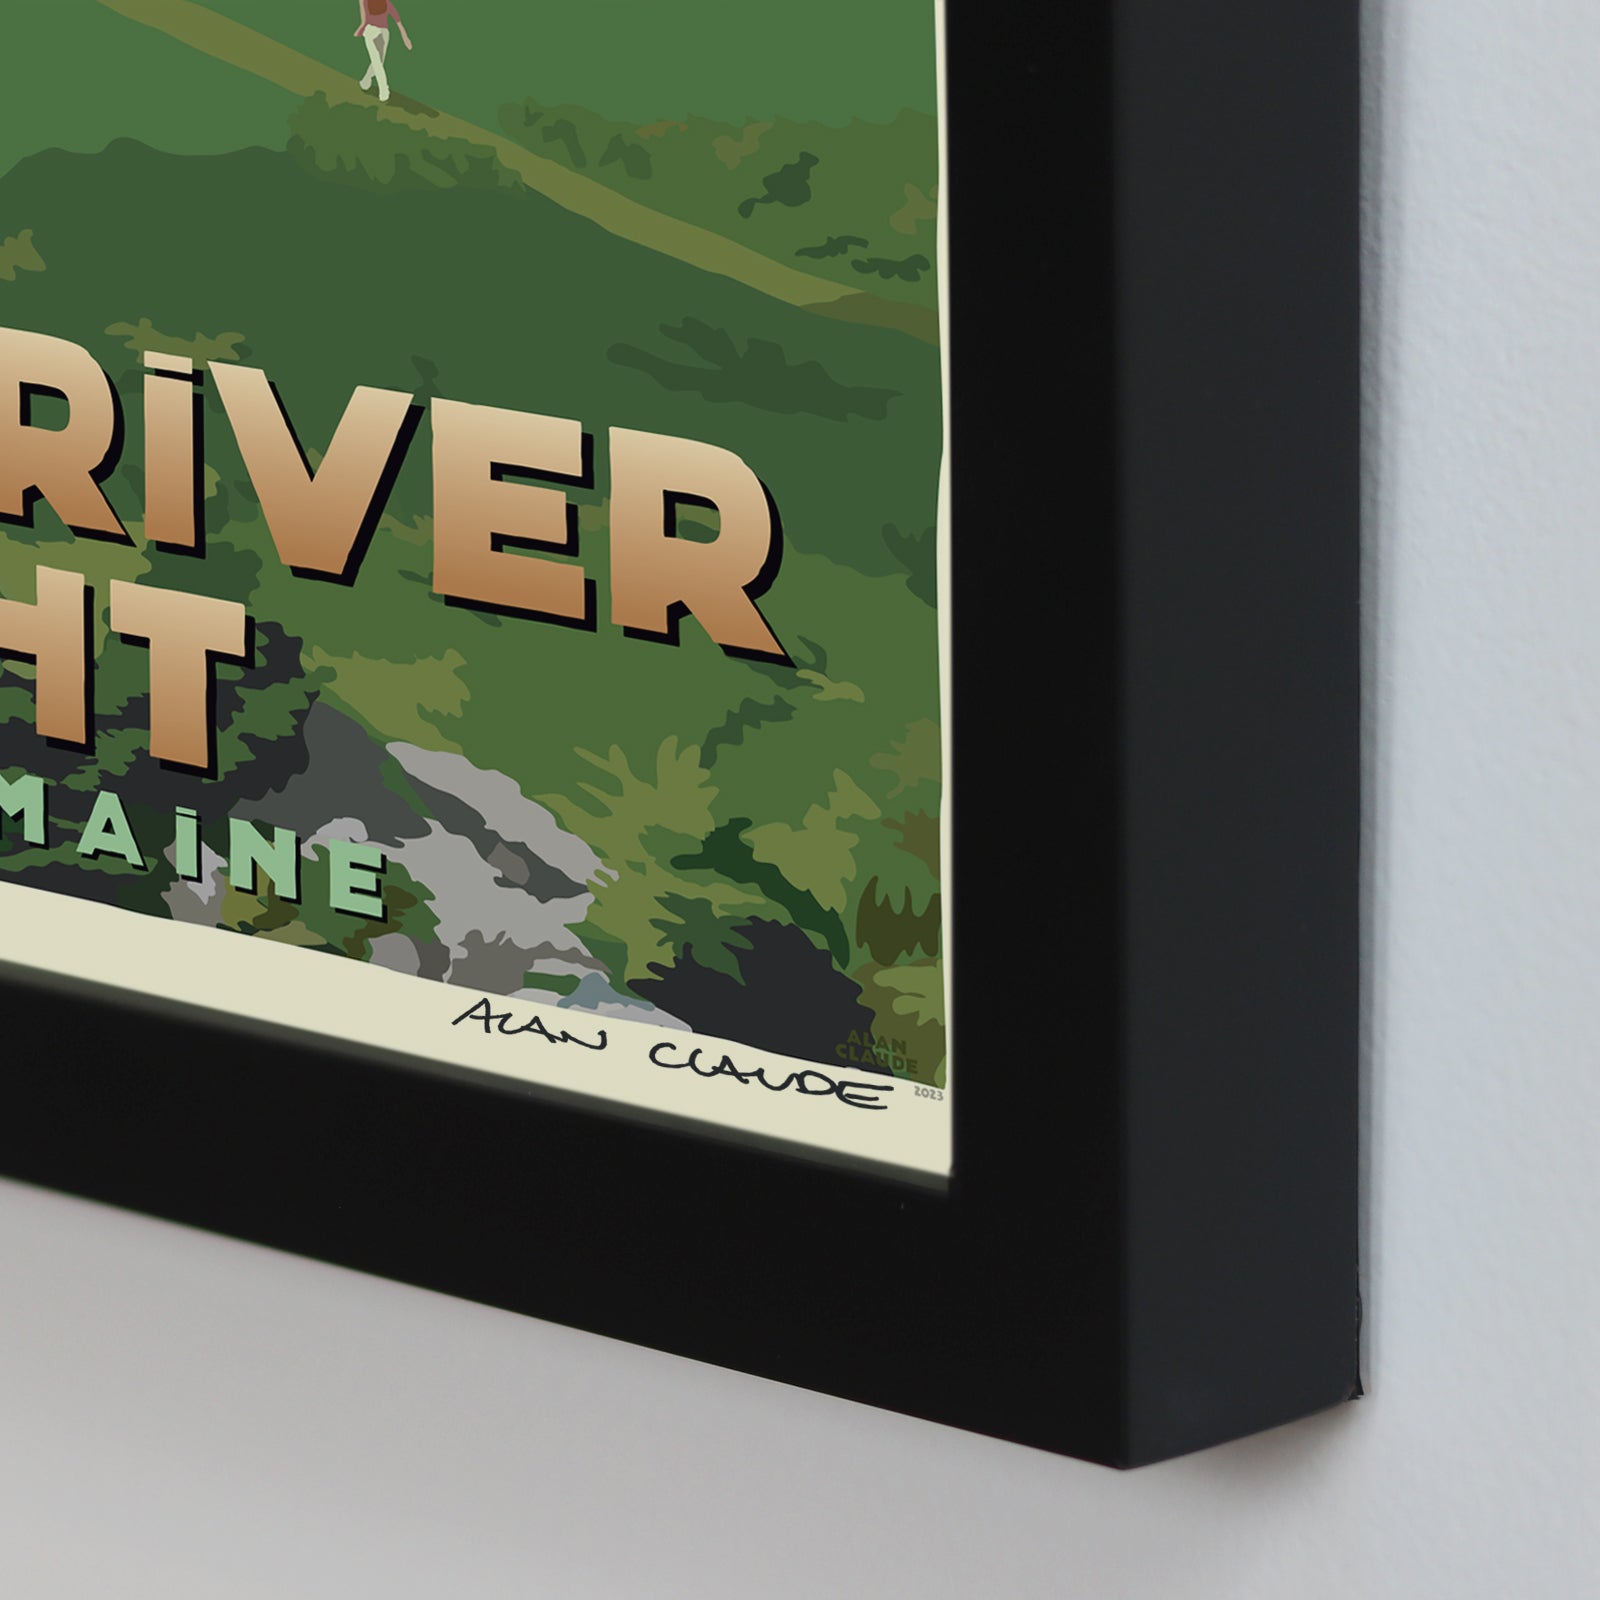 Little River Light Art Print 8" x 10" Framed Travel Poster - Maine